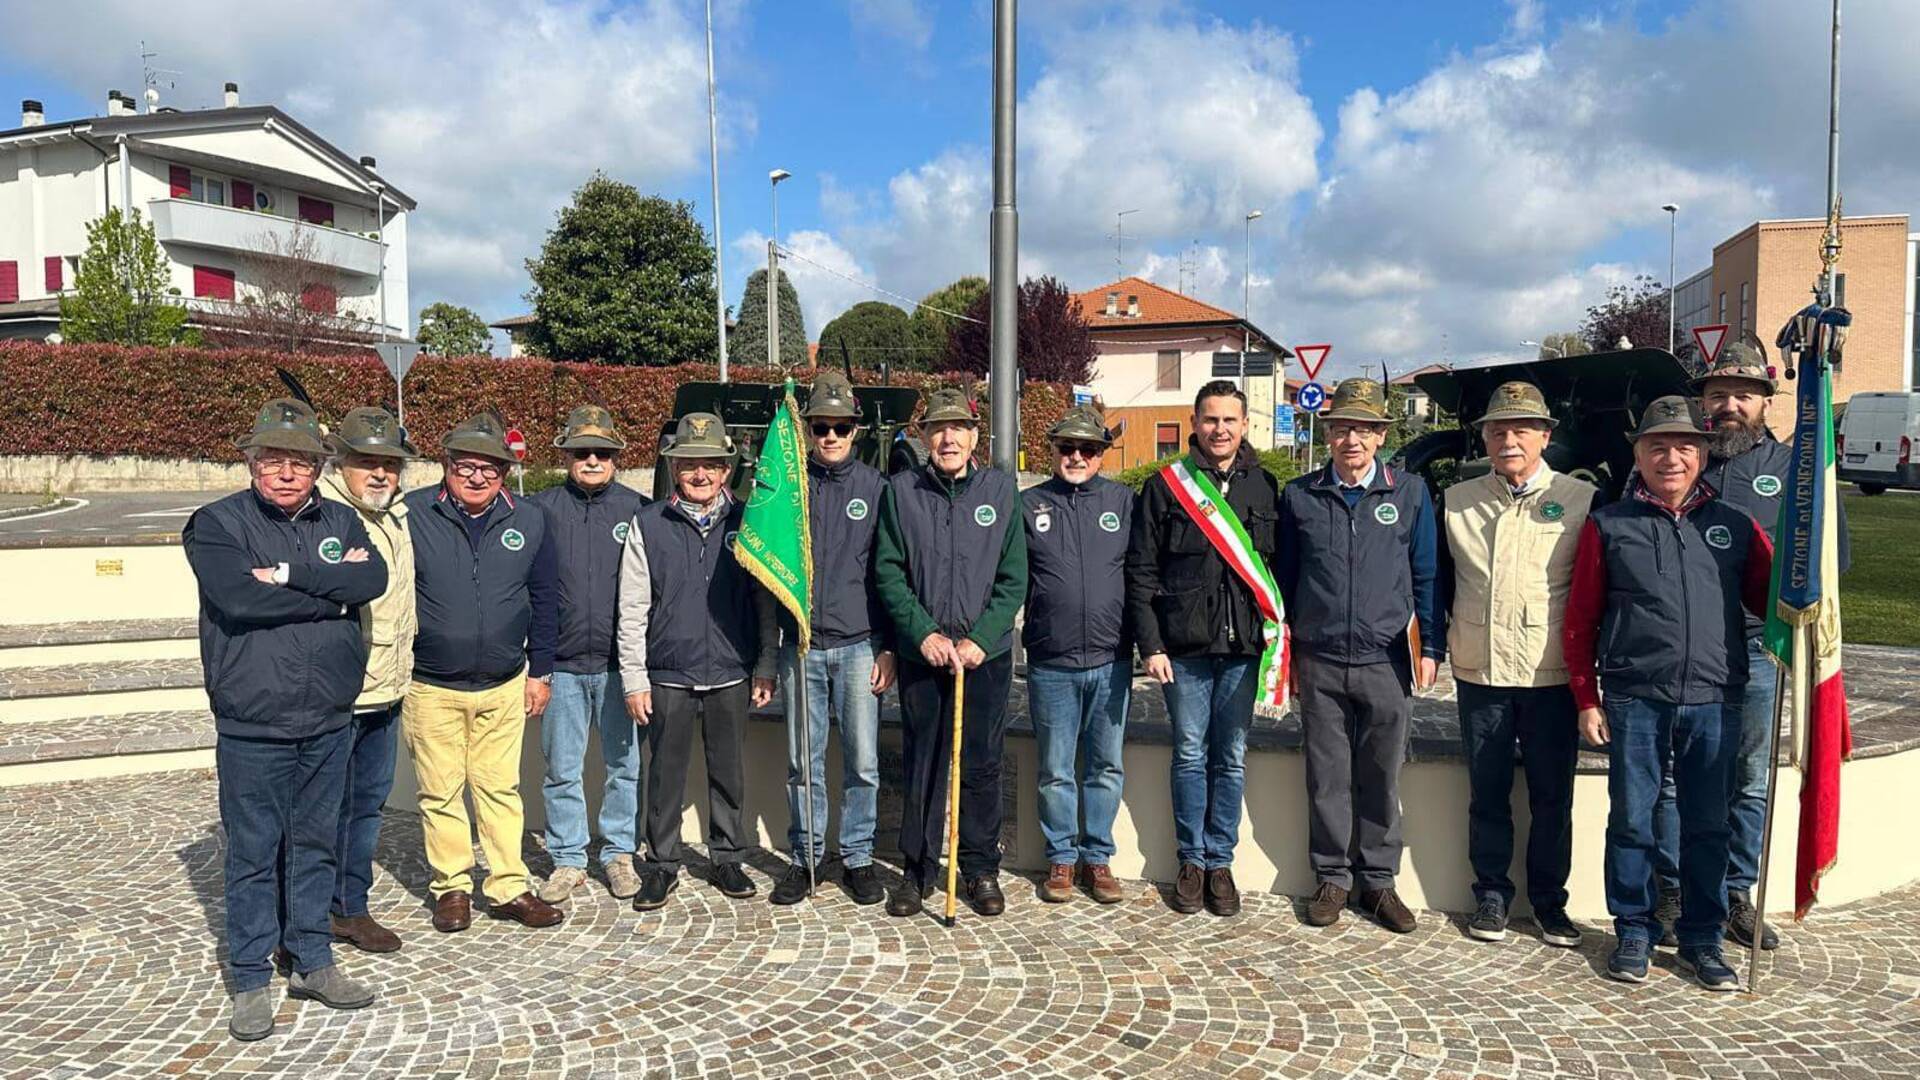 25 aprile a Venegono Inferiore, il sindaco Premazzi: “E’ la festa della libertà”